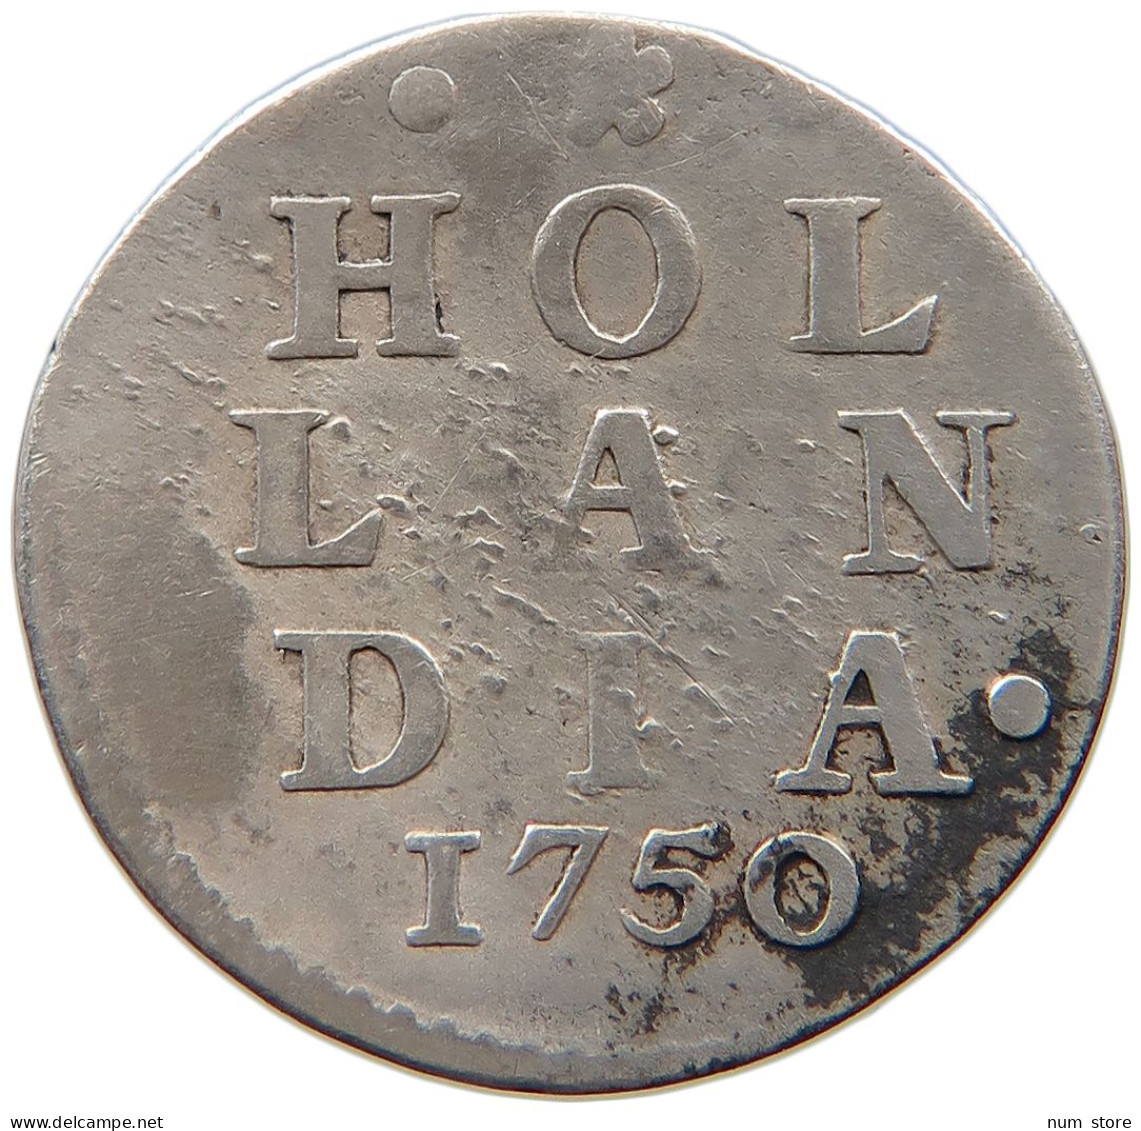 NETHERLANDS 2 STUIVERS 1750 HOLLAND #s101 0179 - Monnaies Provinciales